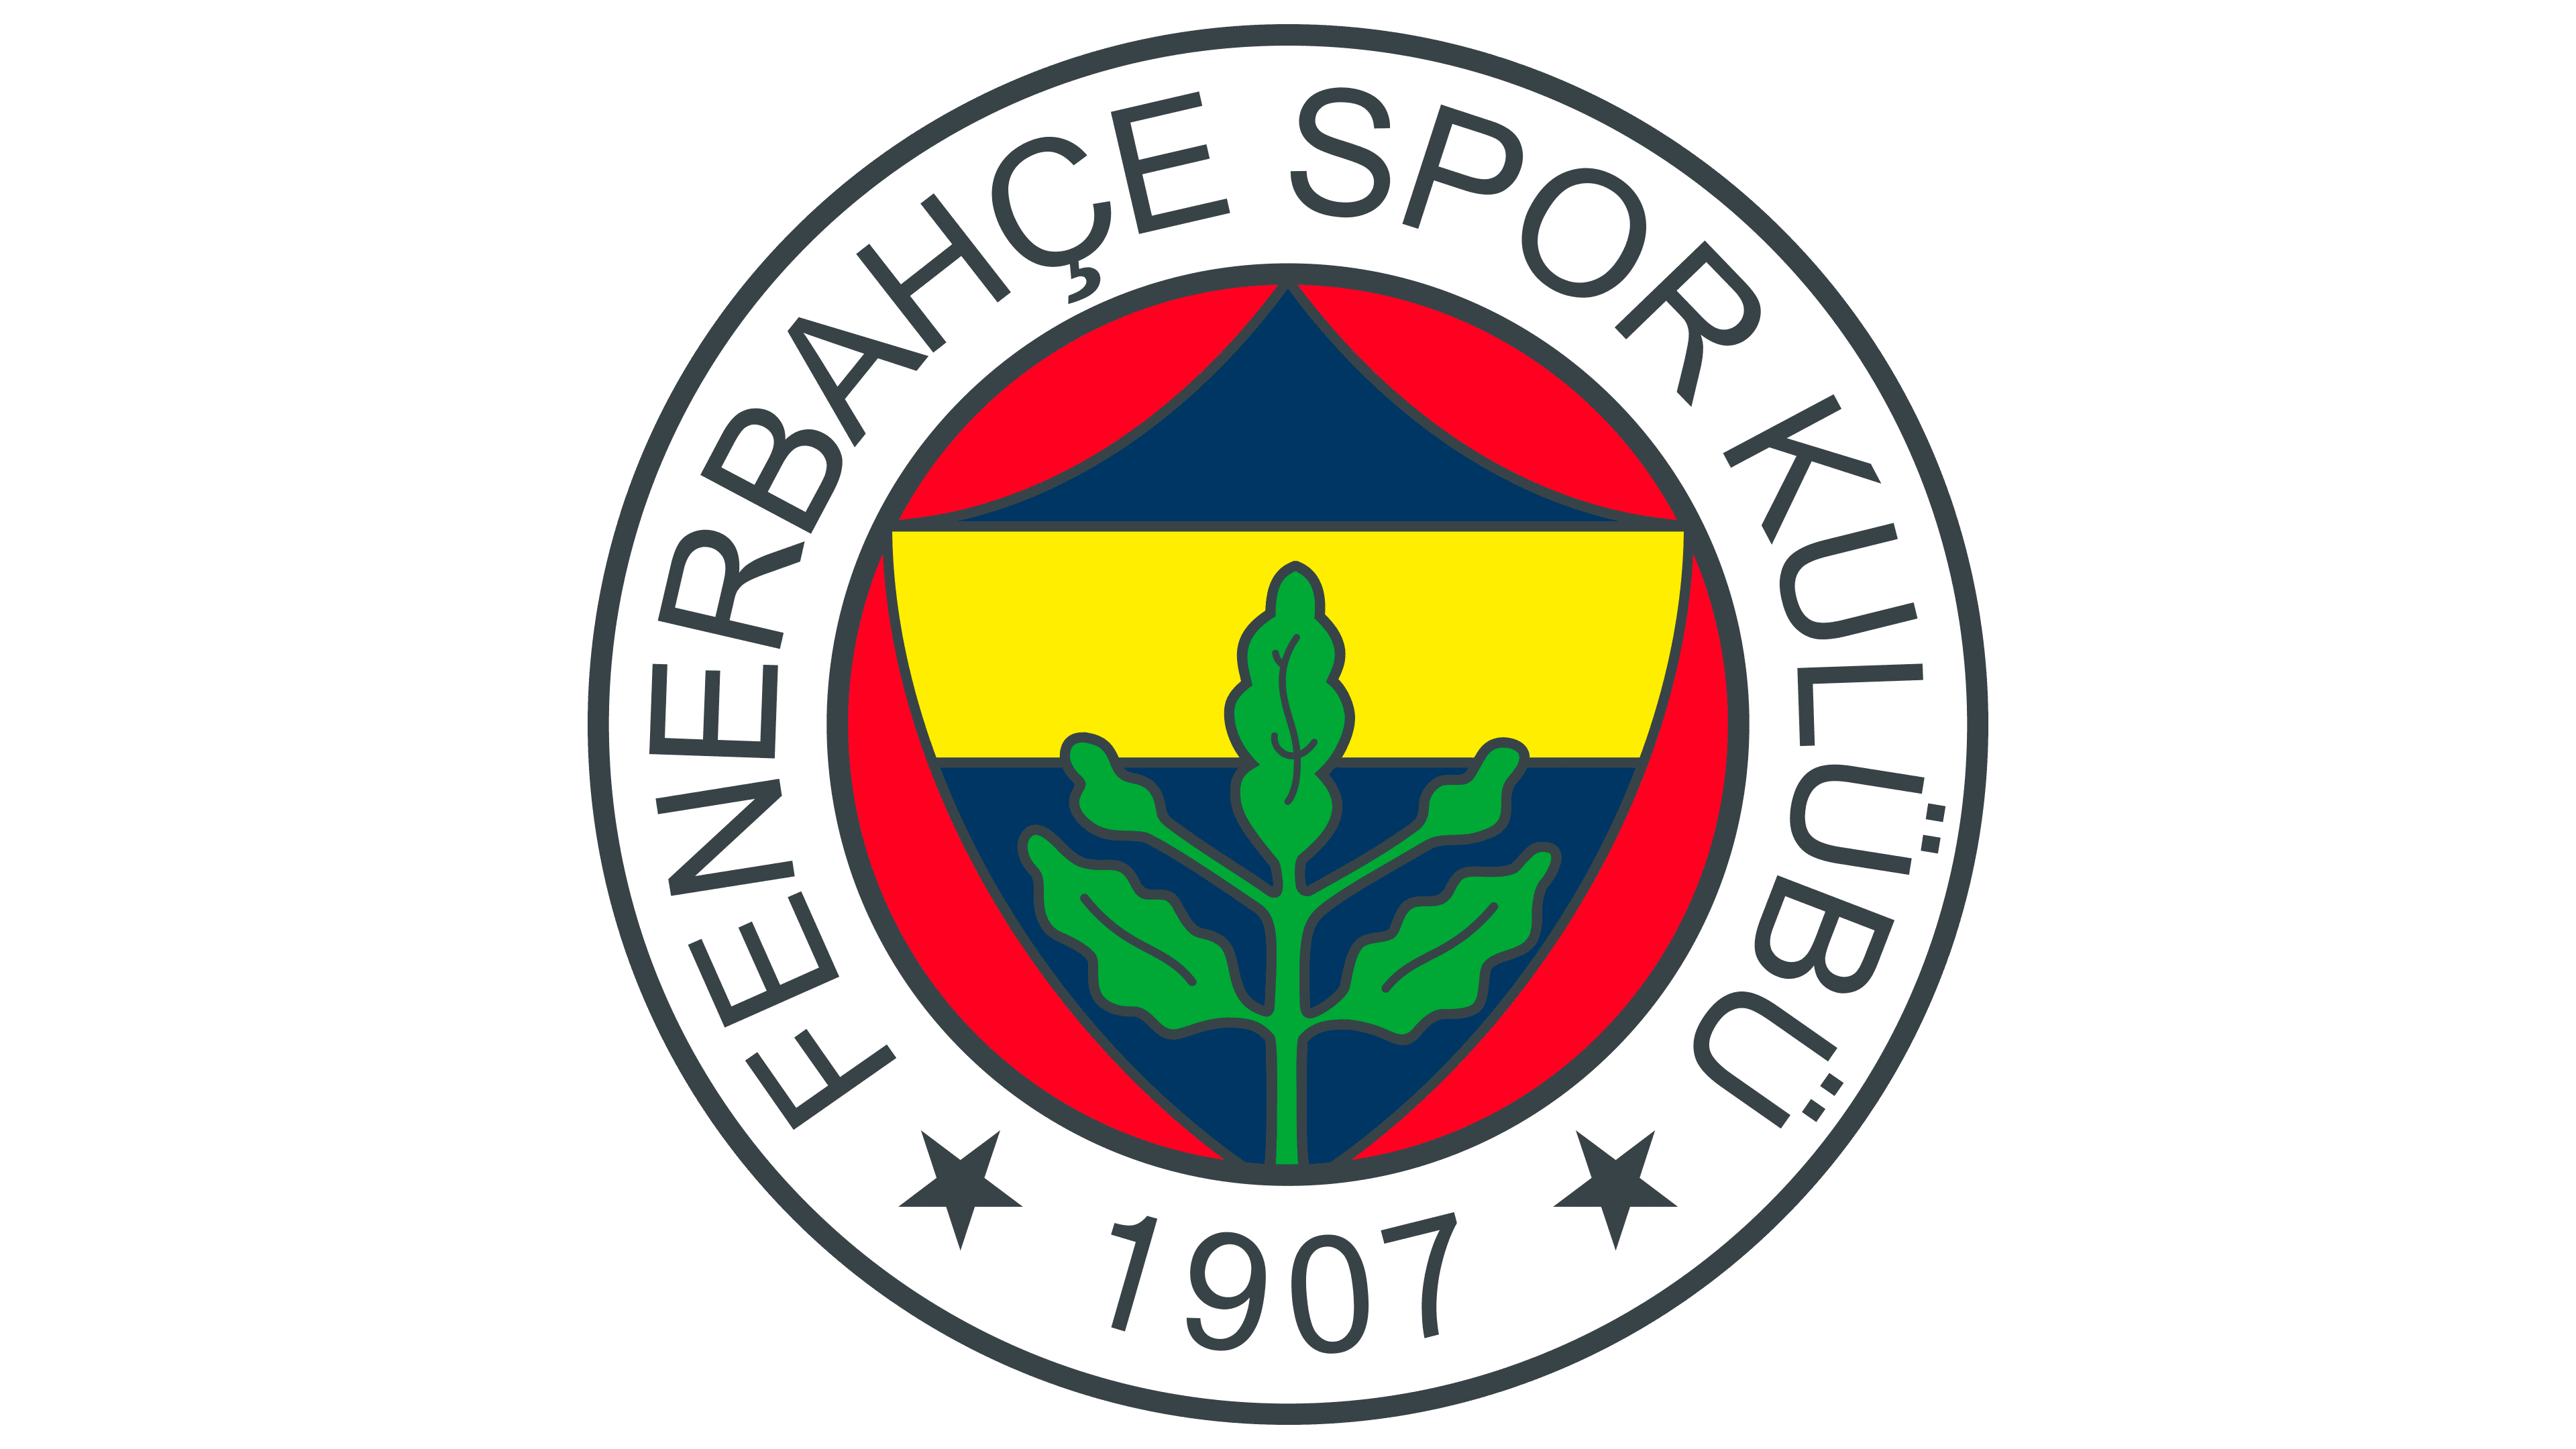 Fenerbahçe Logo : histoire, signification de l'emblème